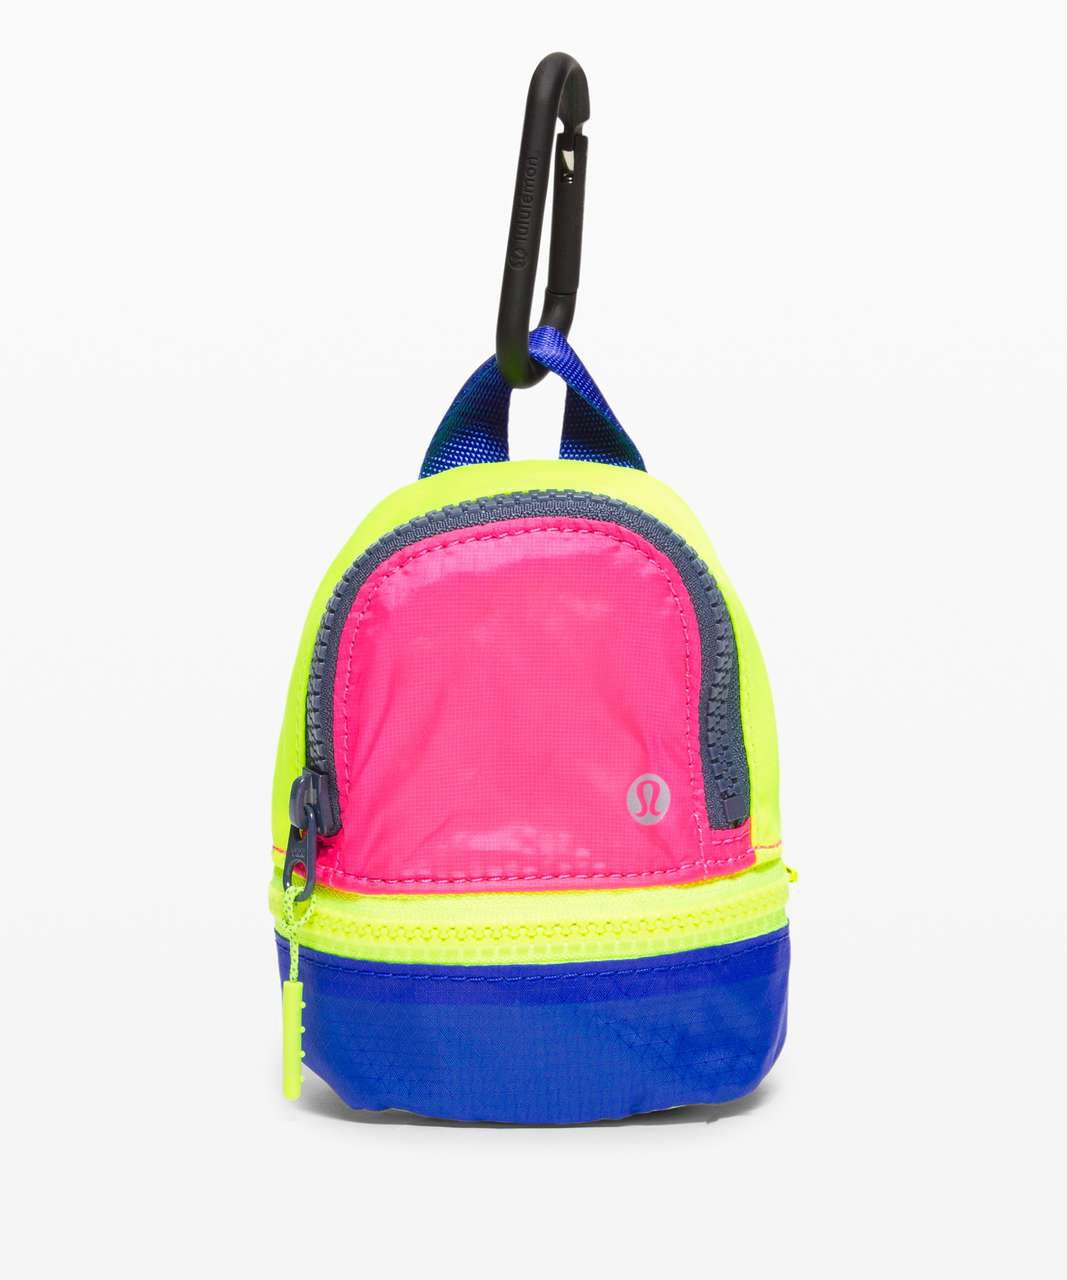 Lululemon City Adventurer Backpack *Nano - Pink Highlight / Cerulean Blue / Highlight Yellow